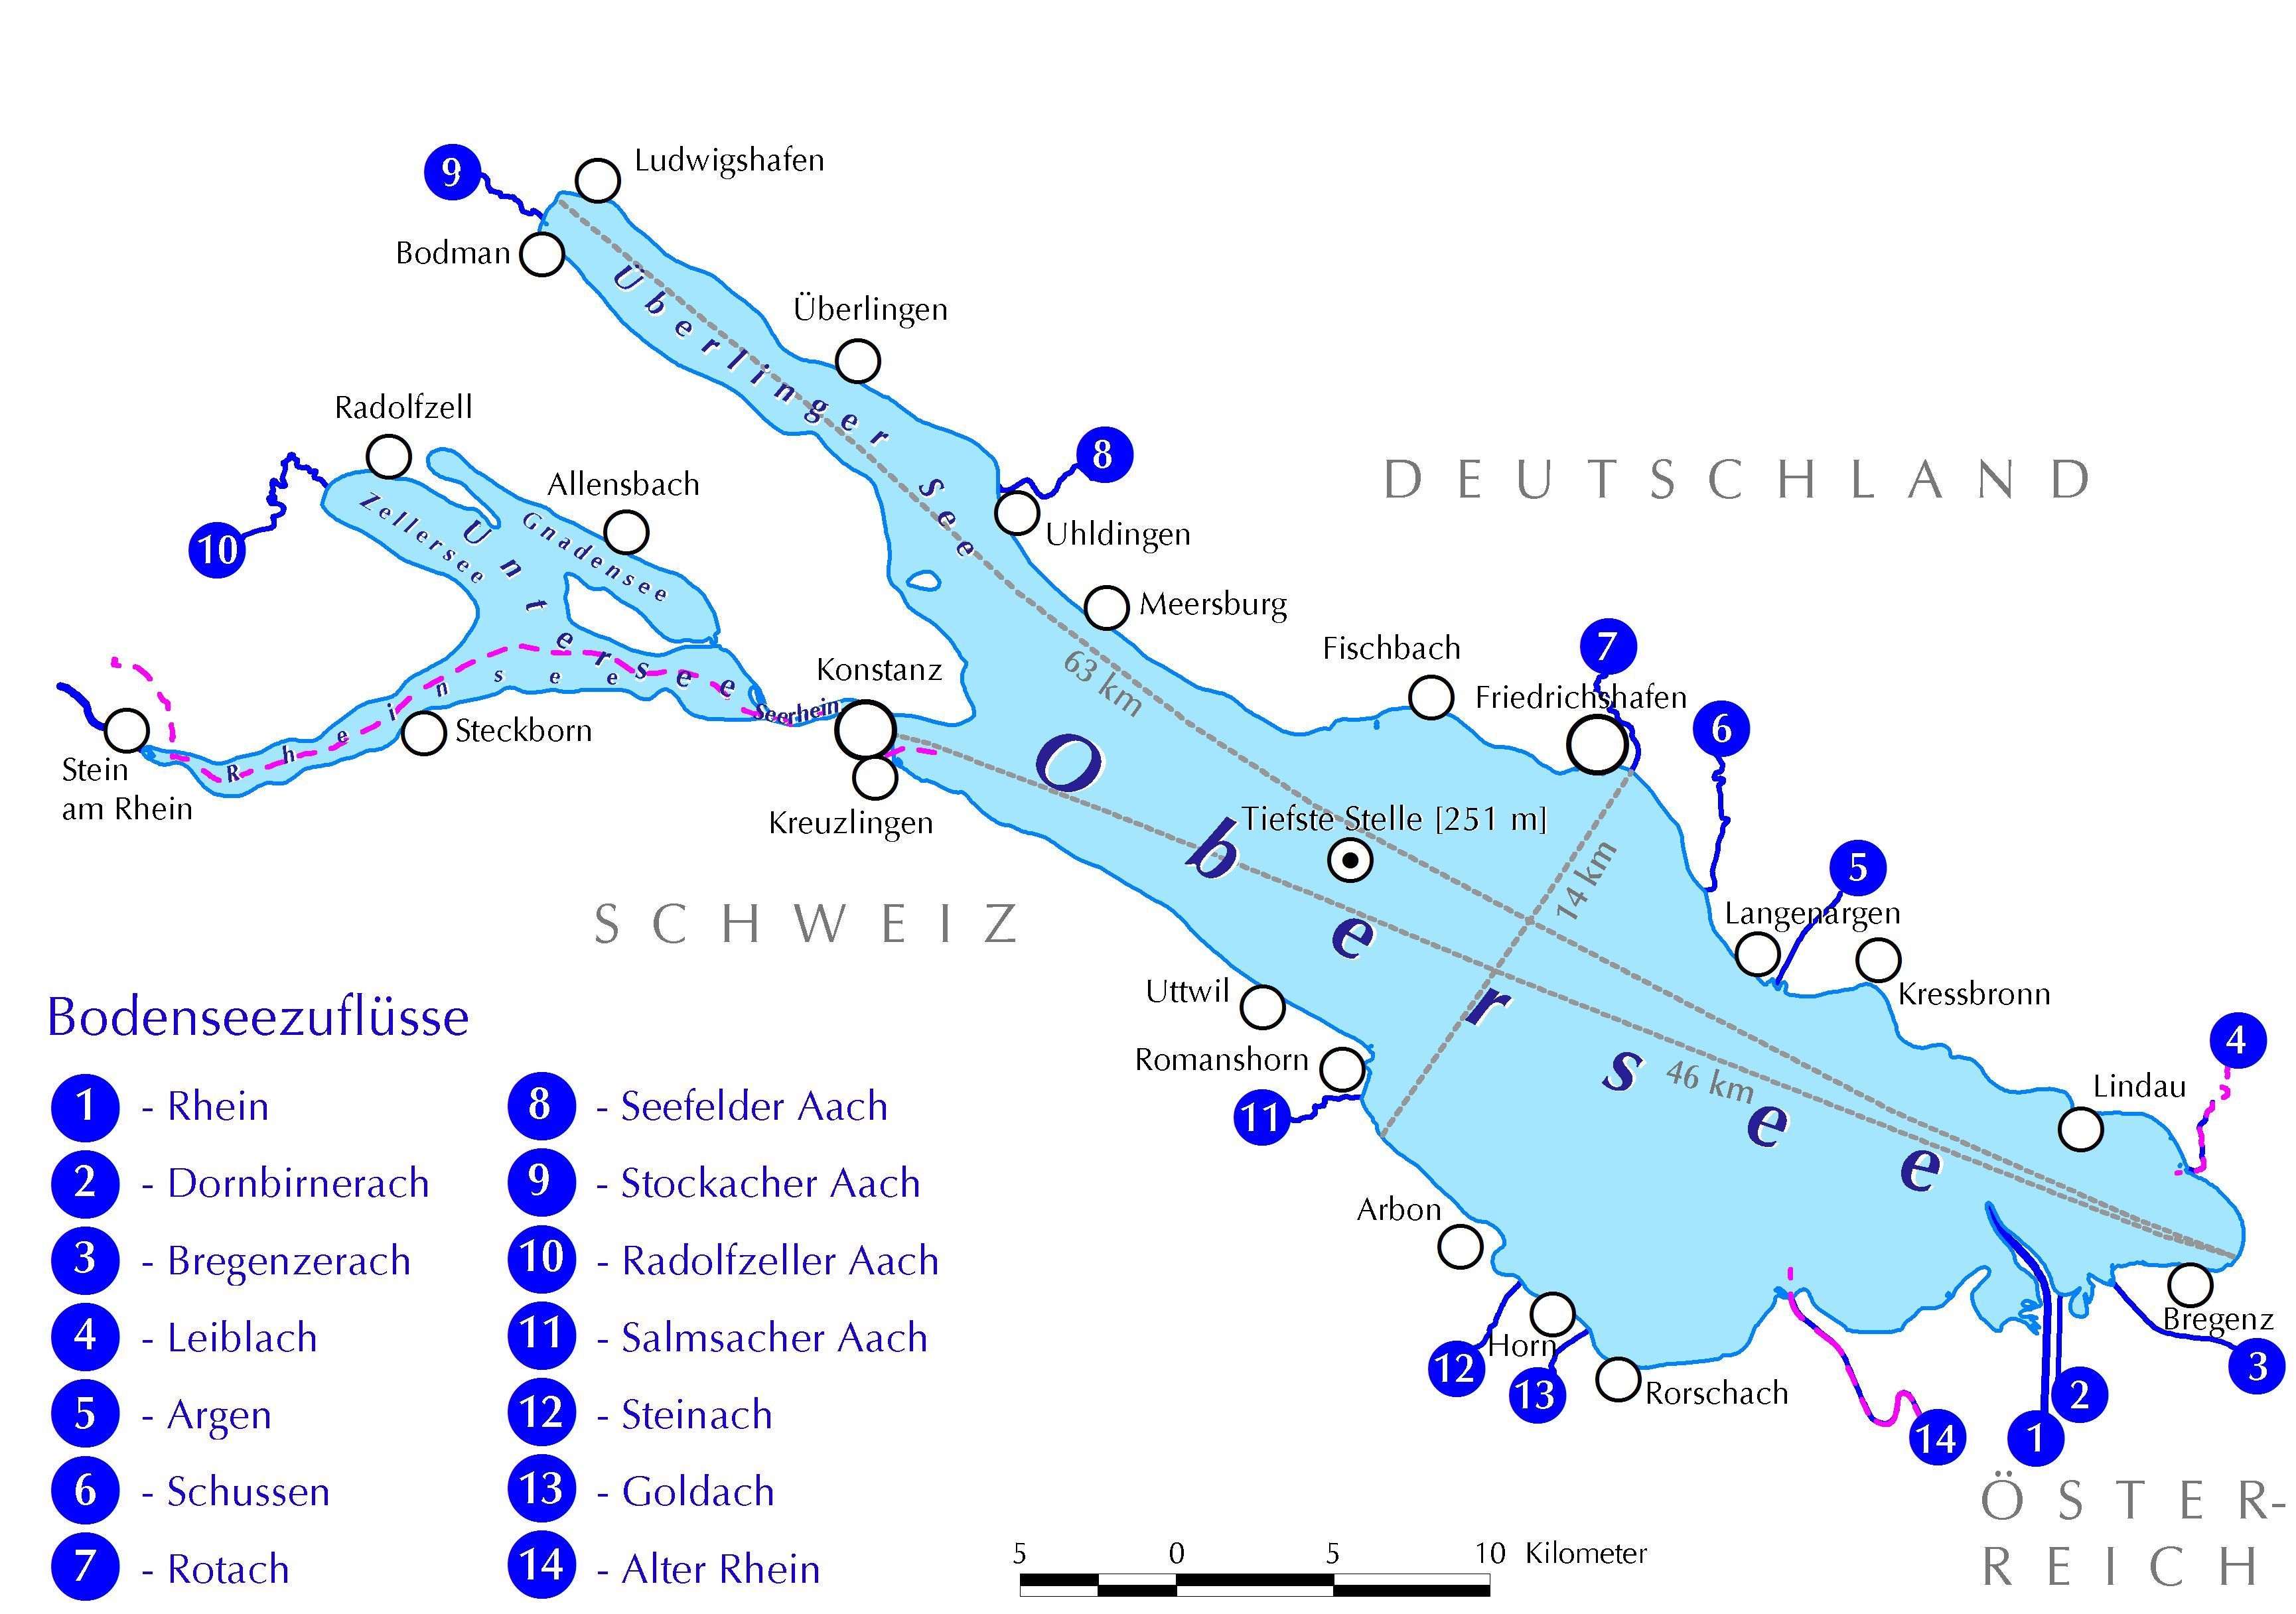 Karte mit den 14 Bodenseezuflüssen Rhein, Dornbirnerach, Bregenzerach, Leiblach, Argen, Schussen, Rotach, Seefelder Aach, Stockacher Aach, Radolfzeller Aach, Salmsacher Aach, Steinach, Goldach und Alter Rhein